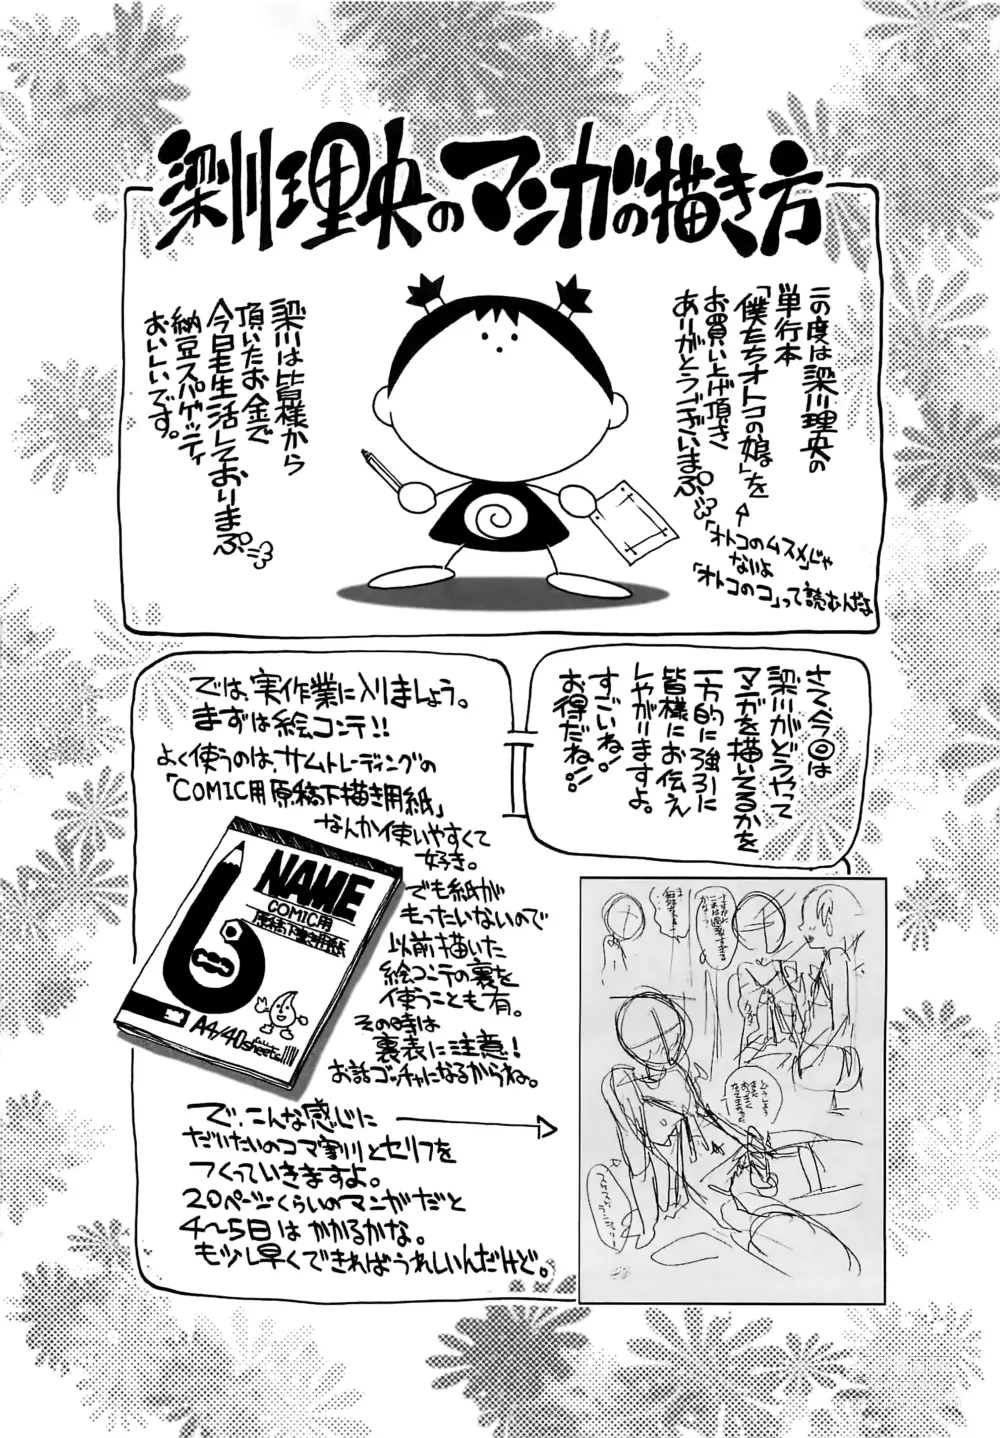 Page 187 of manga Bokutachi Otokonoko